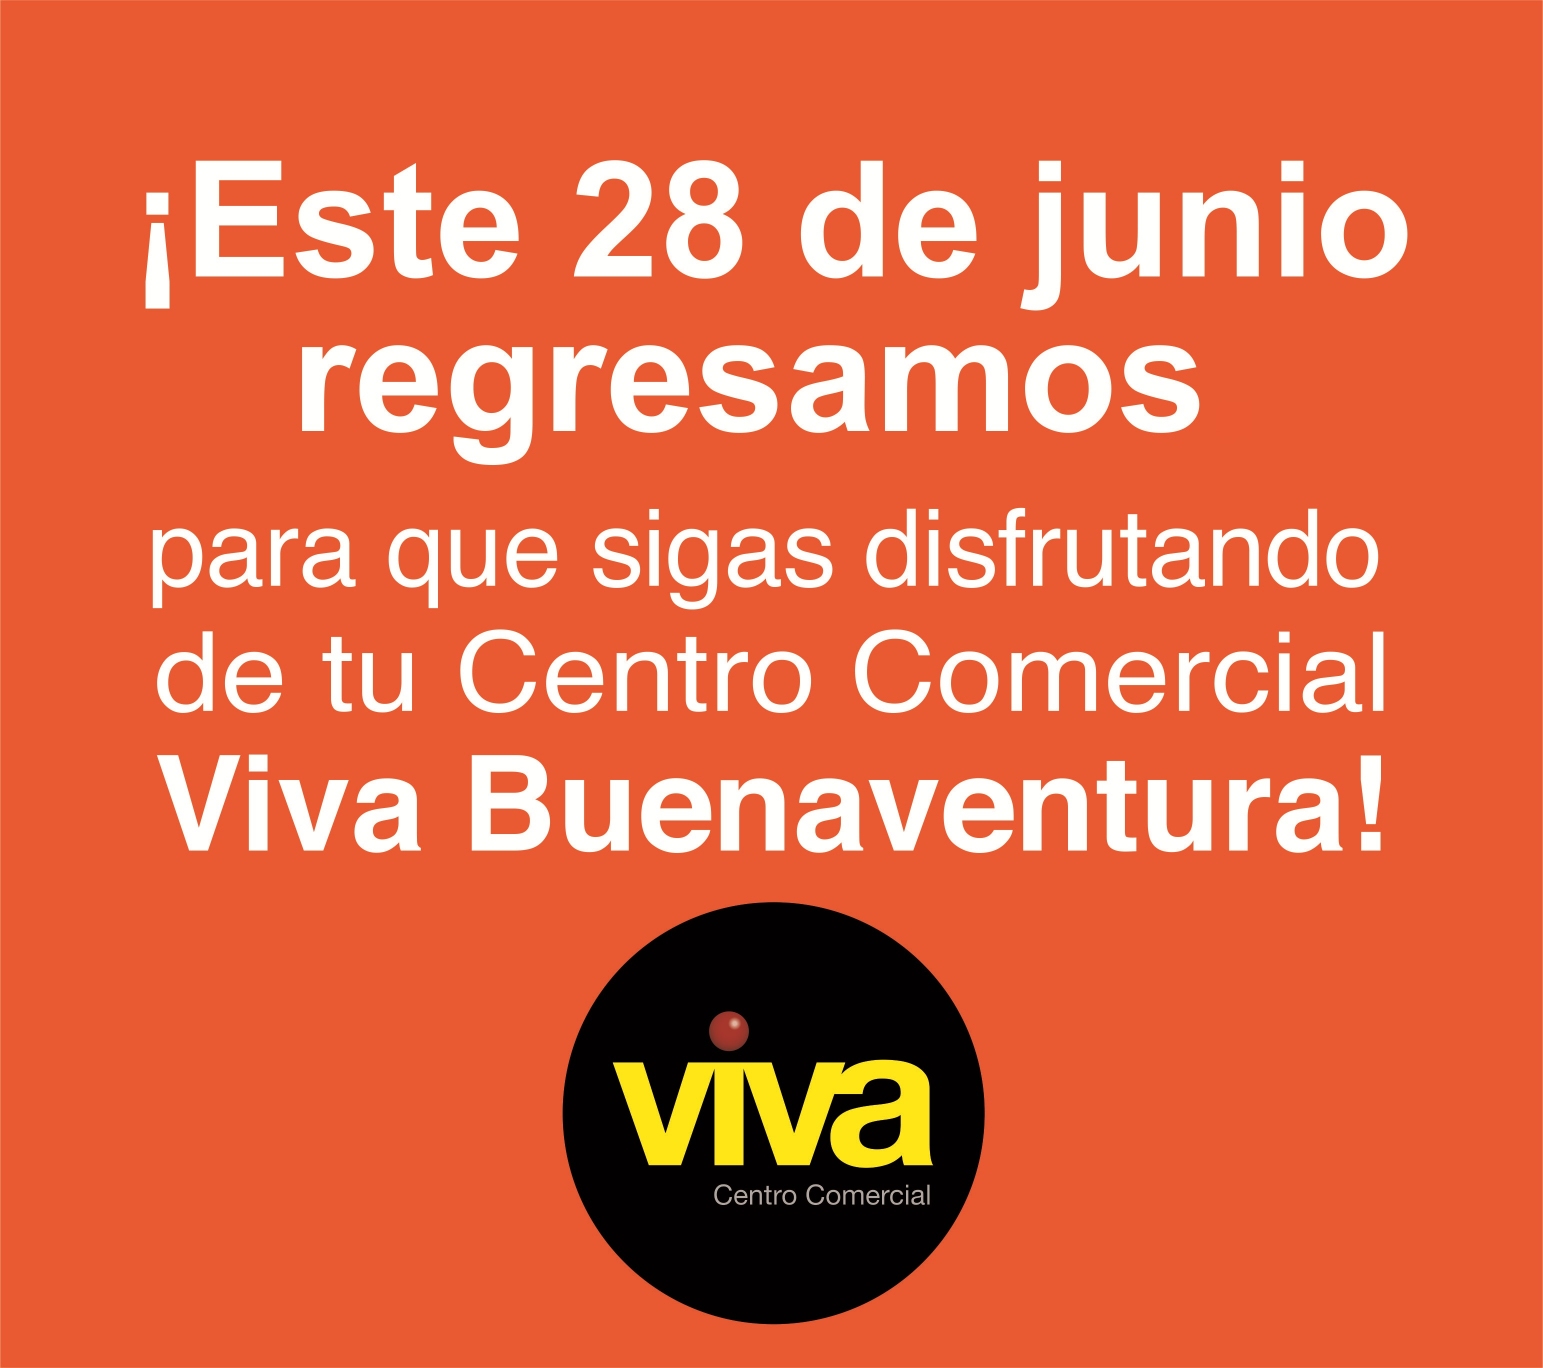 El miércoles 28 de junio reabre sus puertas el Centro Comercial Viva Buenaventura